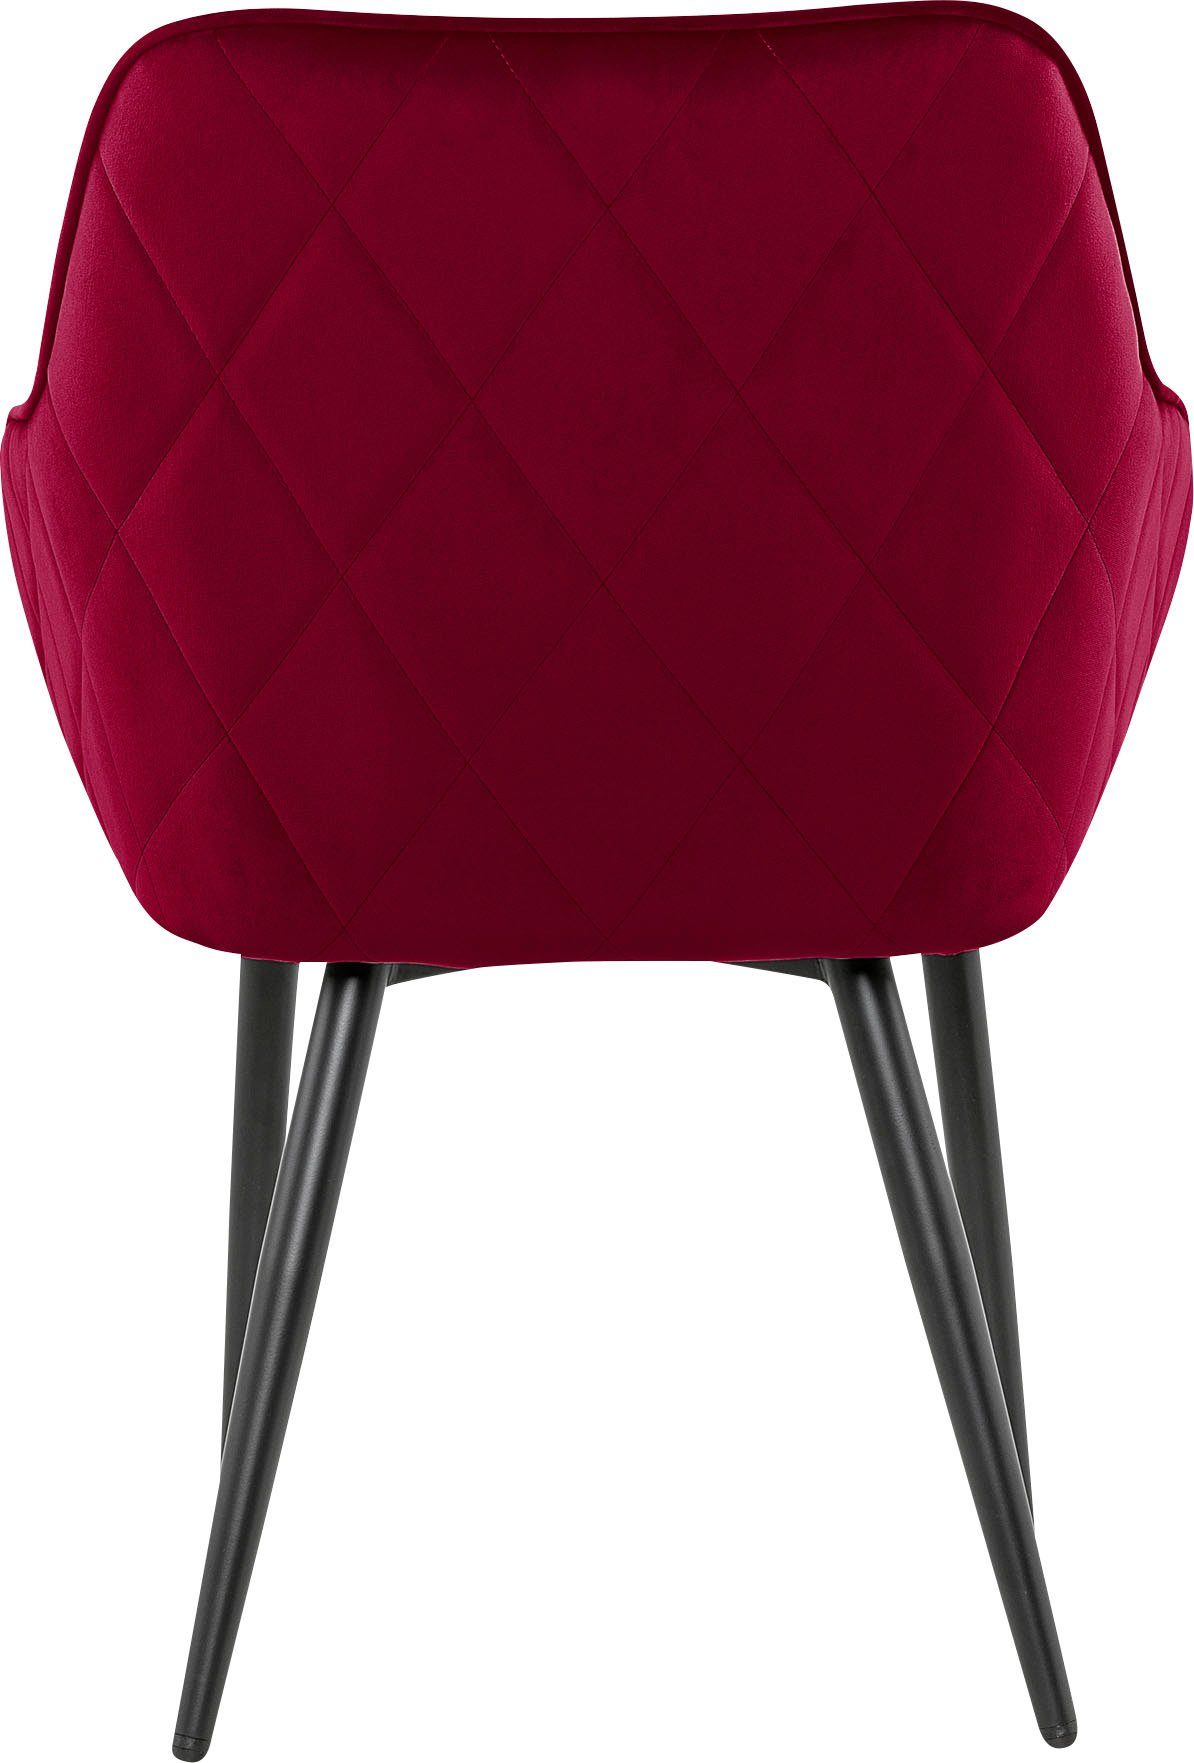 SalesFever Armlehnstuhl, mit Diamantsteppung Rot/Schwarz auf Rückseite der